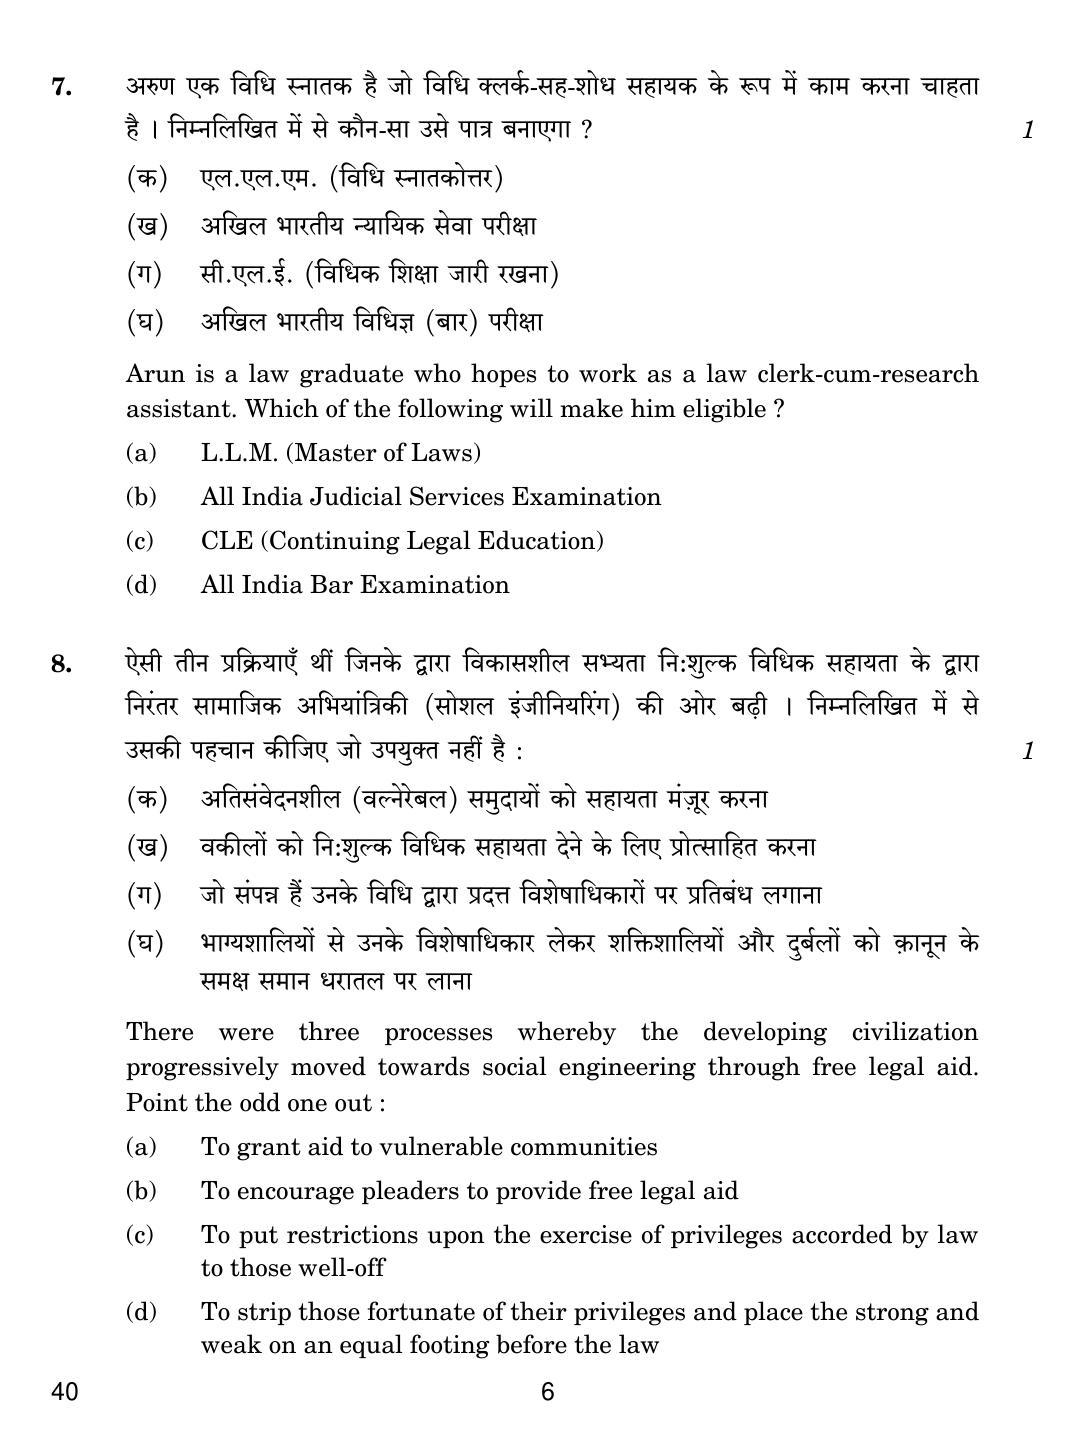 CBSE Class 12 40 LEGAL STUDIES 2018 Question Paper - Page 6